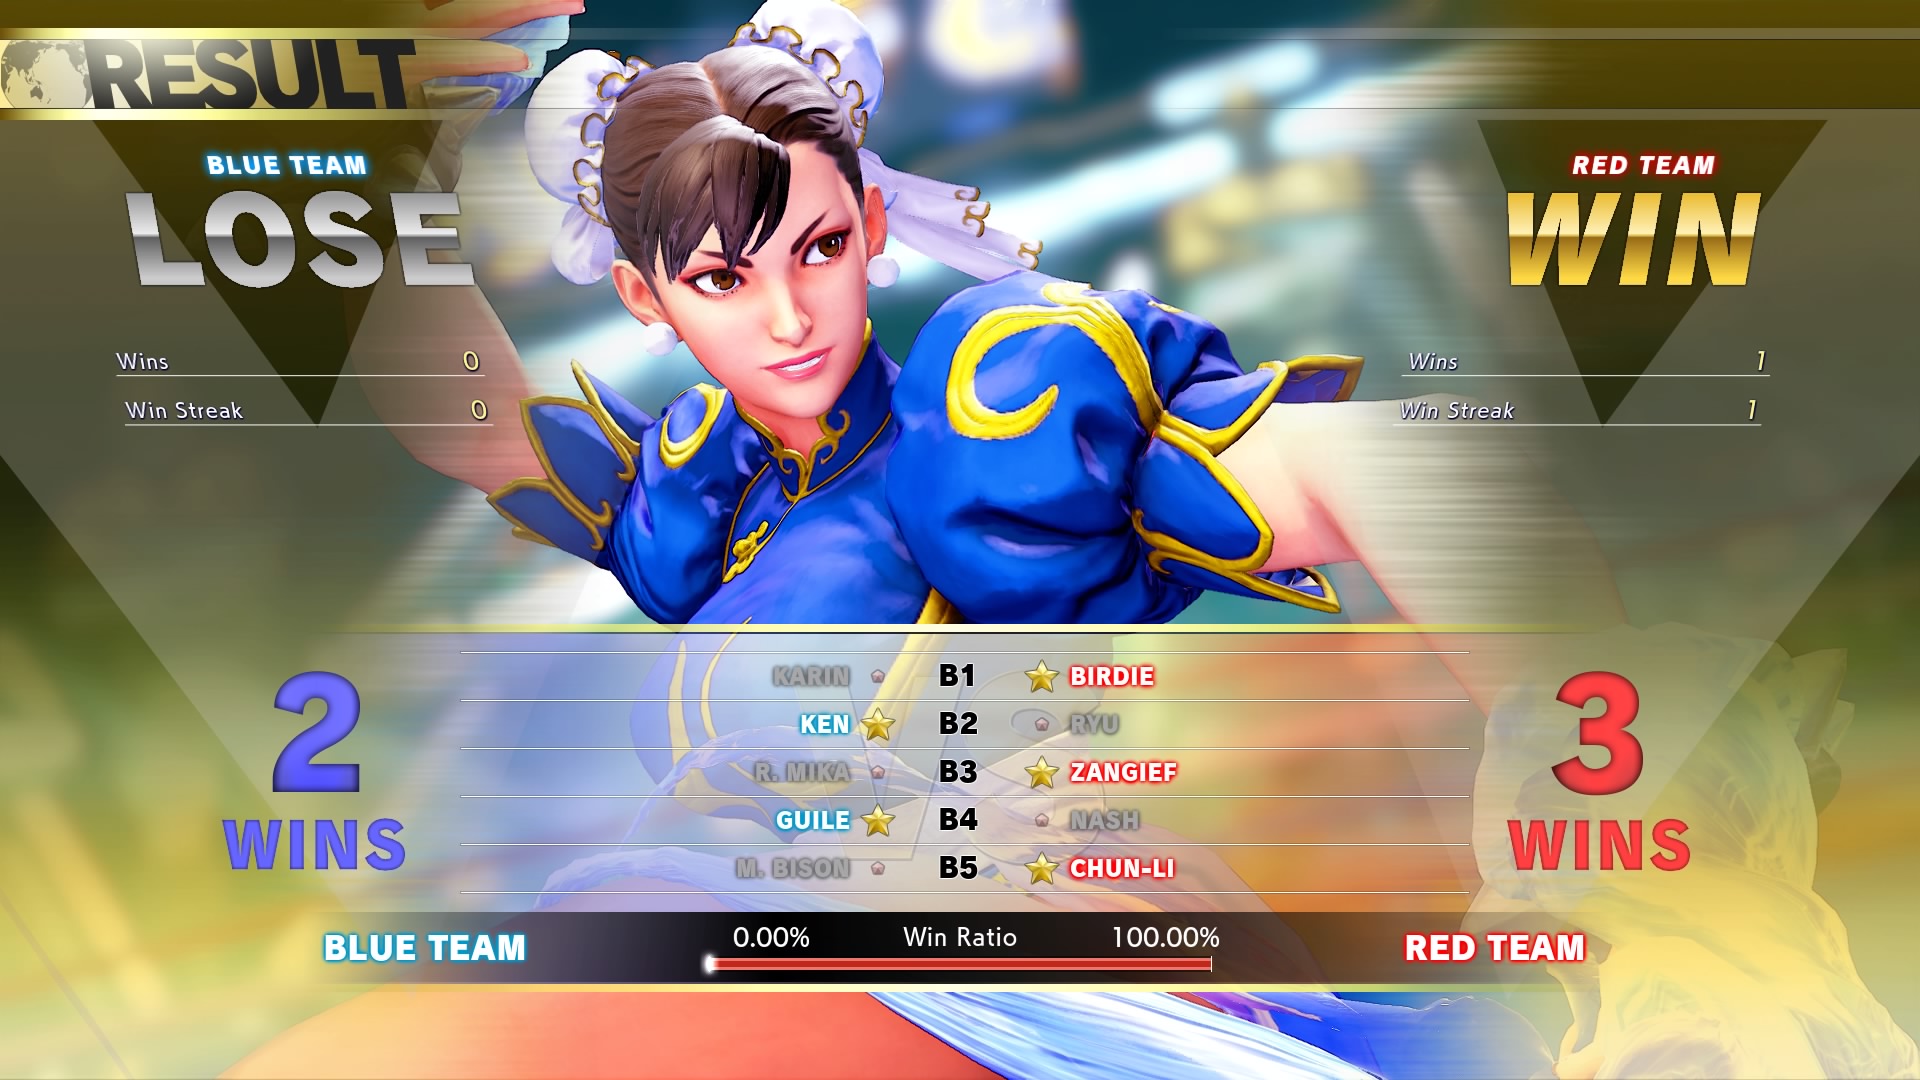 Batallas en equipo en Street Fighter 5: Arcade Edition